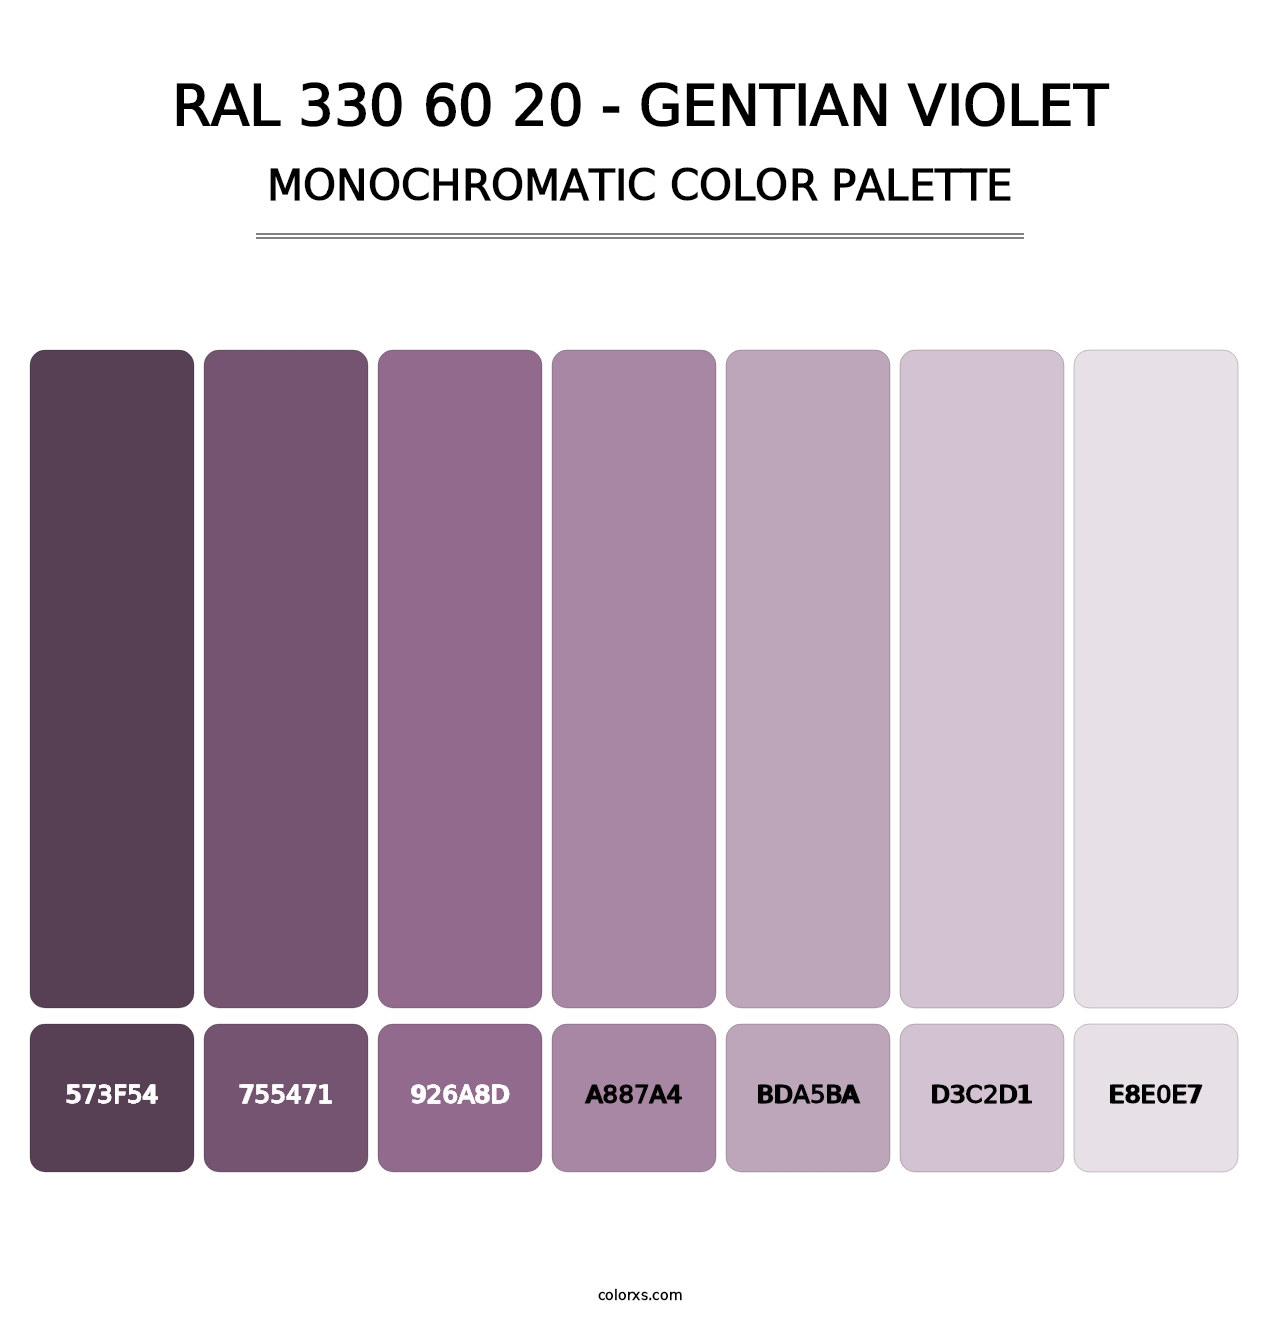 RAL 330 60 20 - Gentian Violet - Monochromatic Color Palette